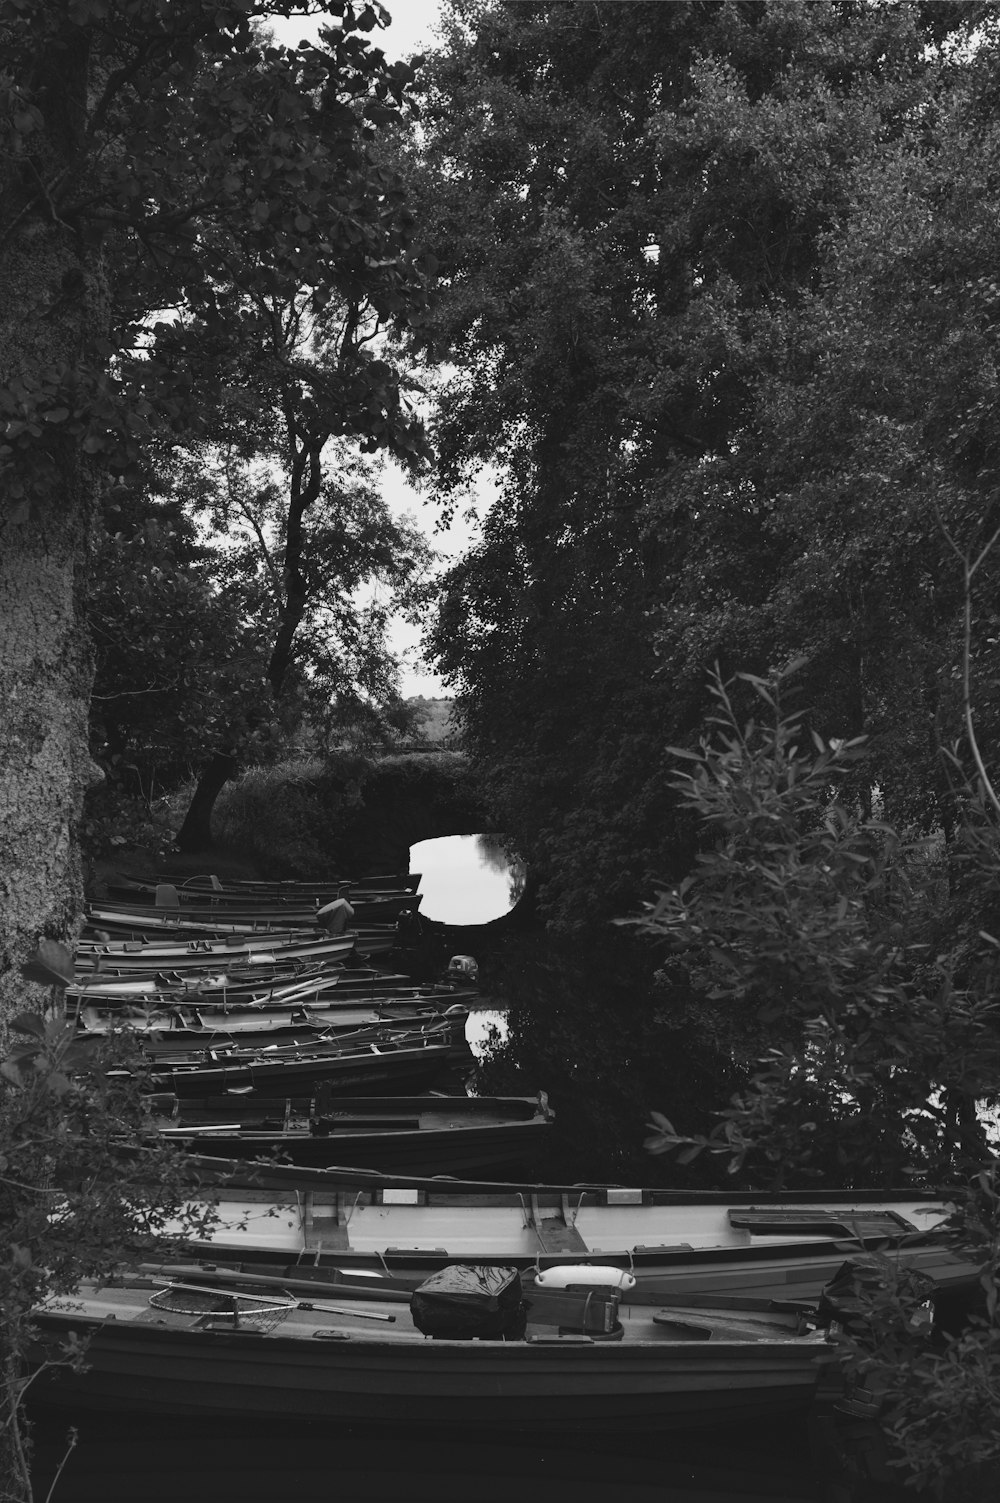 Una foto en blanco y negro de una fila de barcos